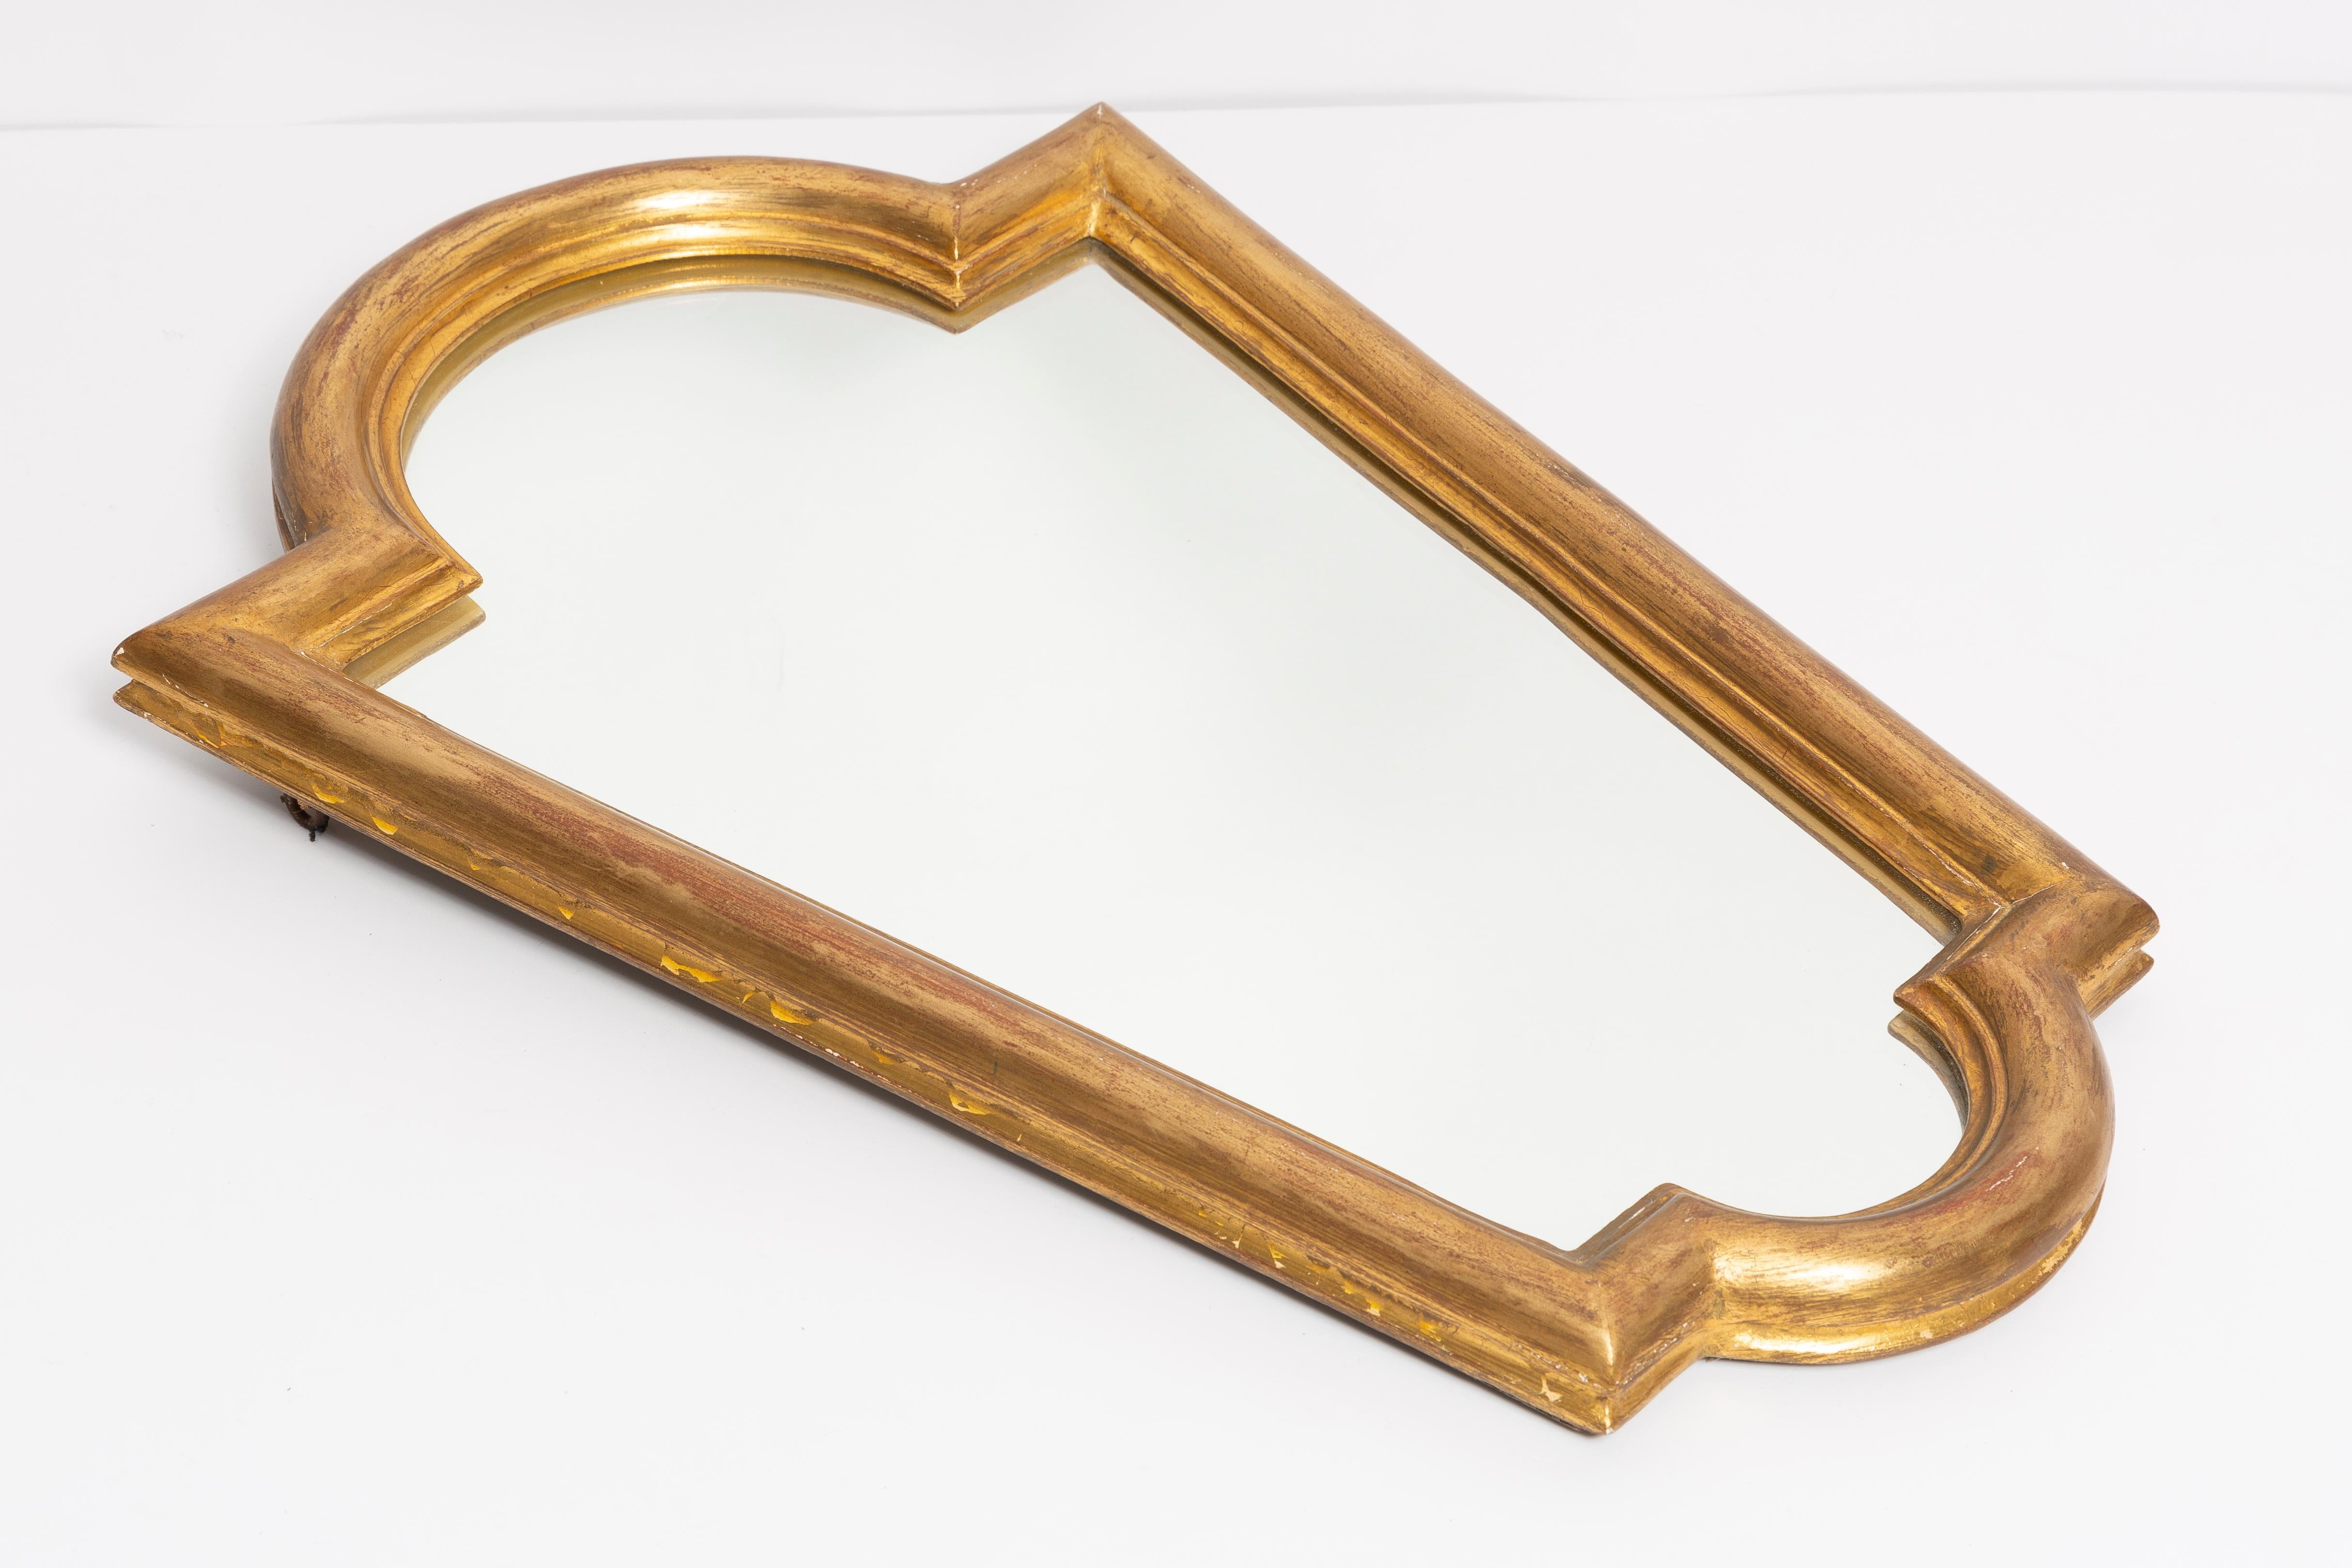 Ein mittelgroßer Spiegel in einem goldenen Zierrahmen aus Italien. Der Rahmen ist aus Holz gefertigt. Spiegel ist in sehr gutem Vintage-Zustand, keine Schäden oder Risse im Rahmen. Original Glas. Ein schönes Stück für jedes Interieur! Nur ein